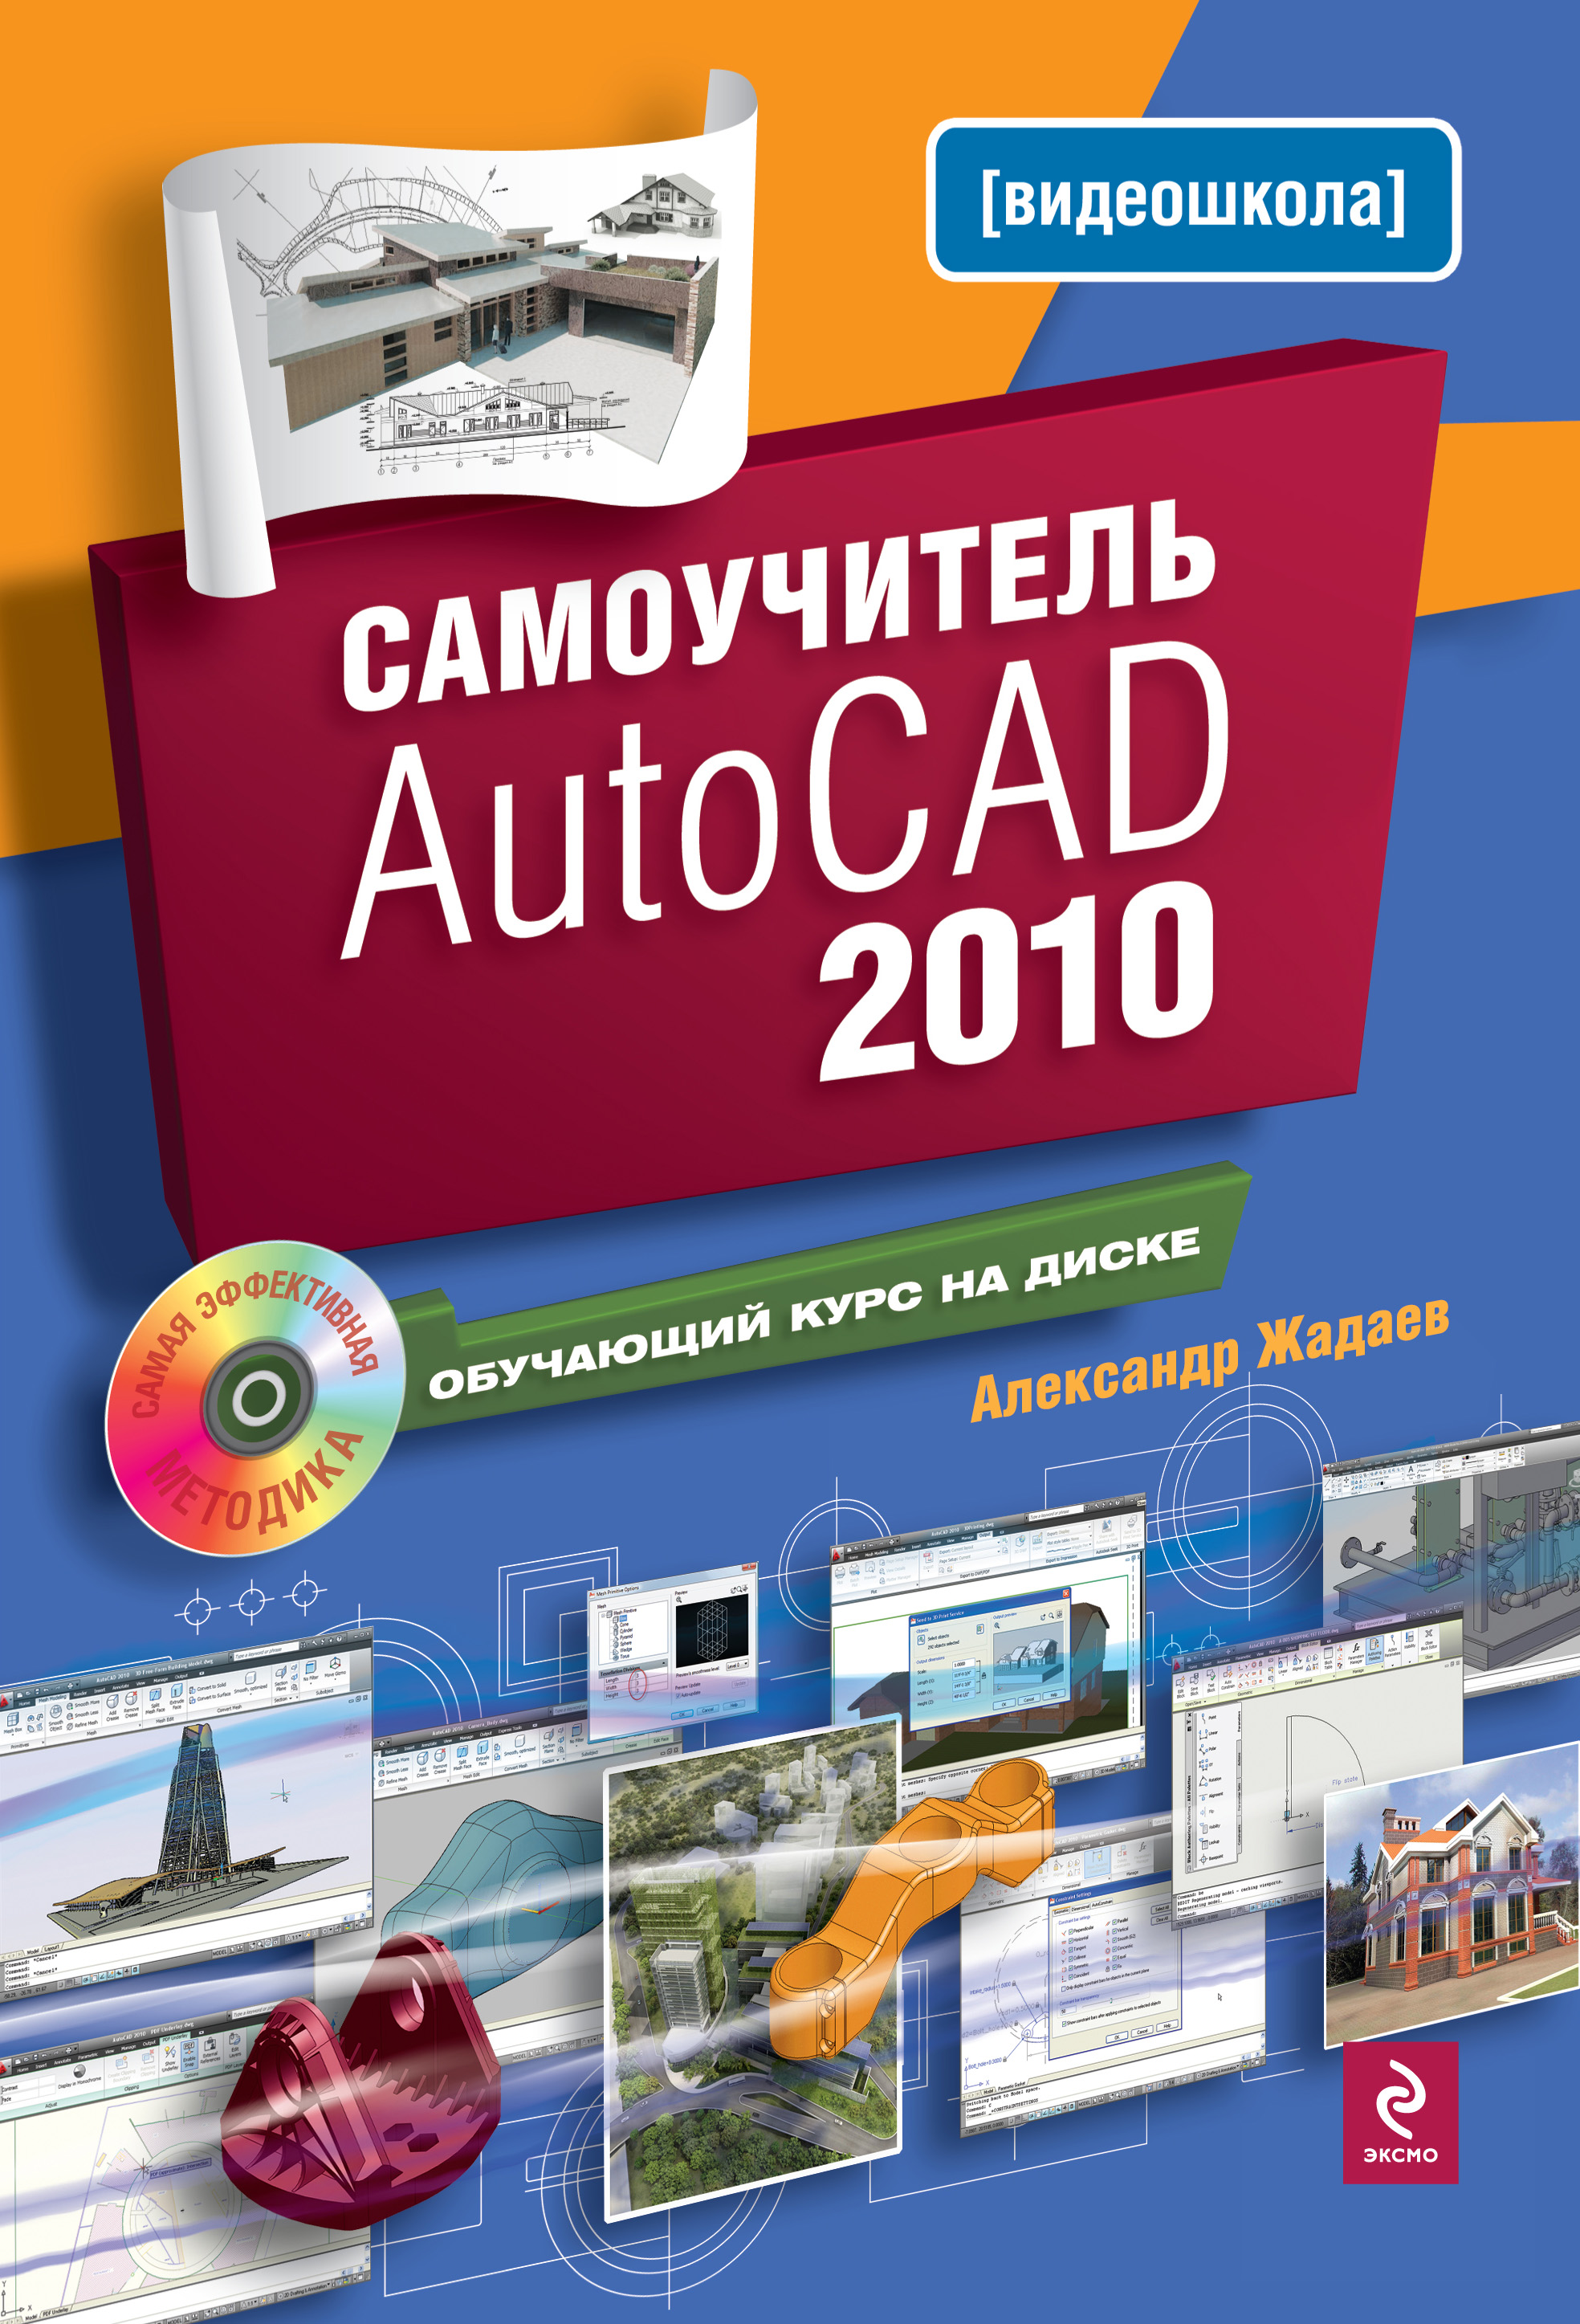 Книга Самоучитель AutoCAD 2010 из серии , созданная Александр Жадаев, может относится к жанру Программы. Стоимость электронной книги Самоучитель AutoCAD 2010 с идентификатором 425752 составляет 109.95 руб.